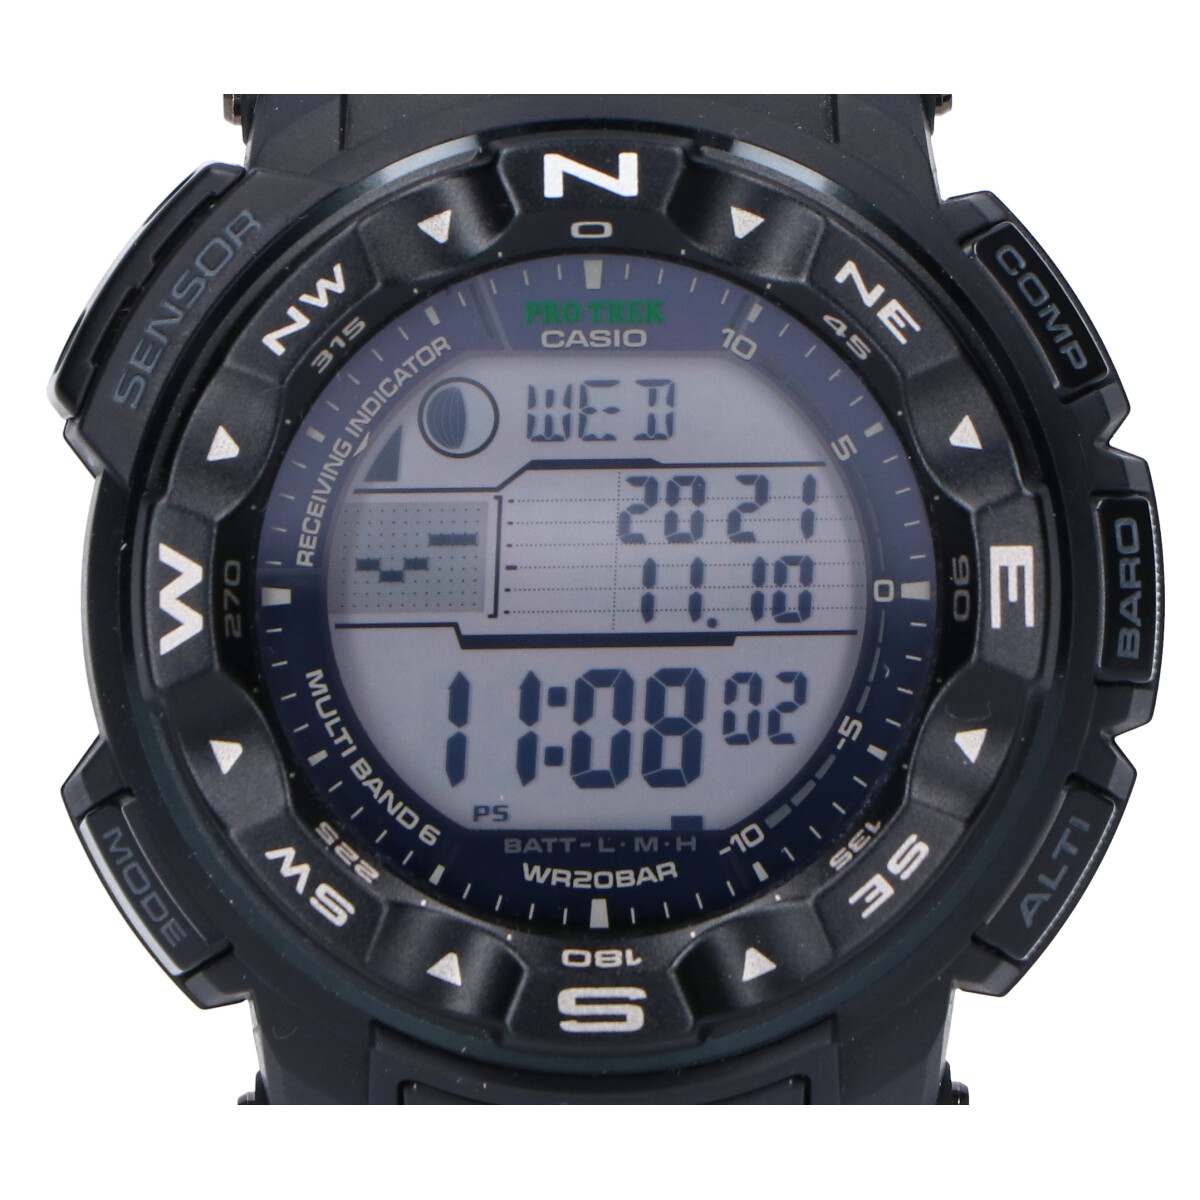 カシオのプロトレック(PRO TREK)　MULTIFIELD LINE PRW-2500-1JF　マルチバンド6タフソーラー電波腕時計の買取実績です。